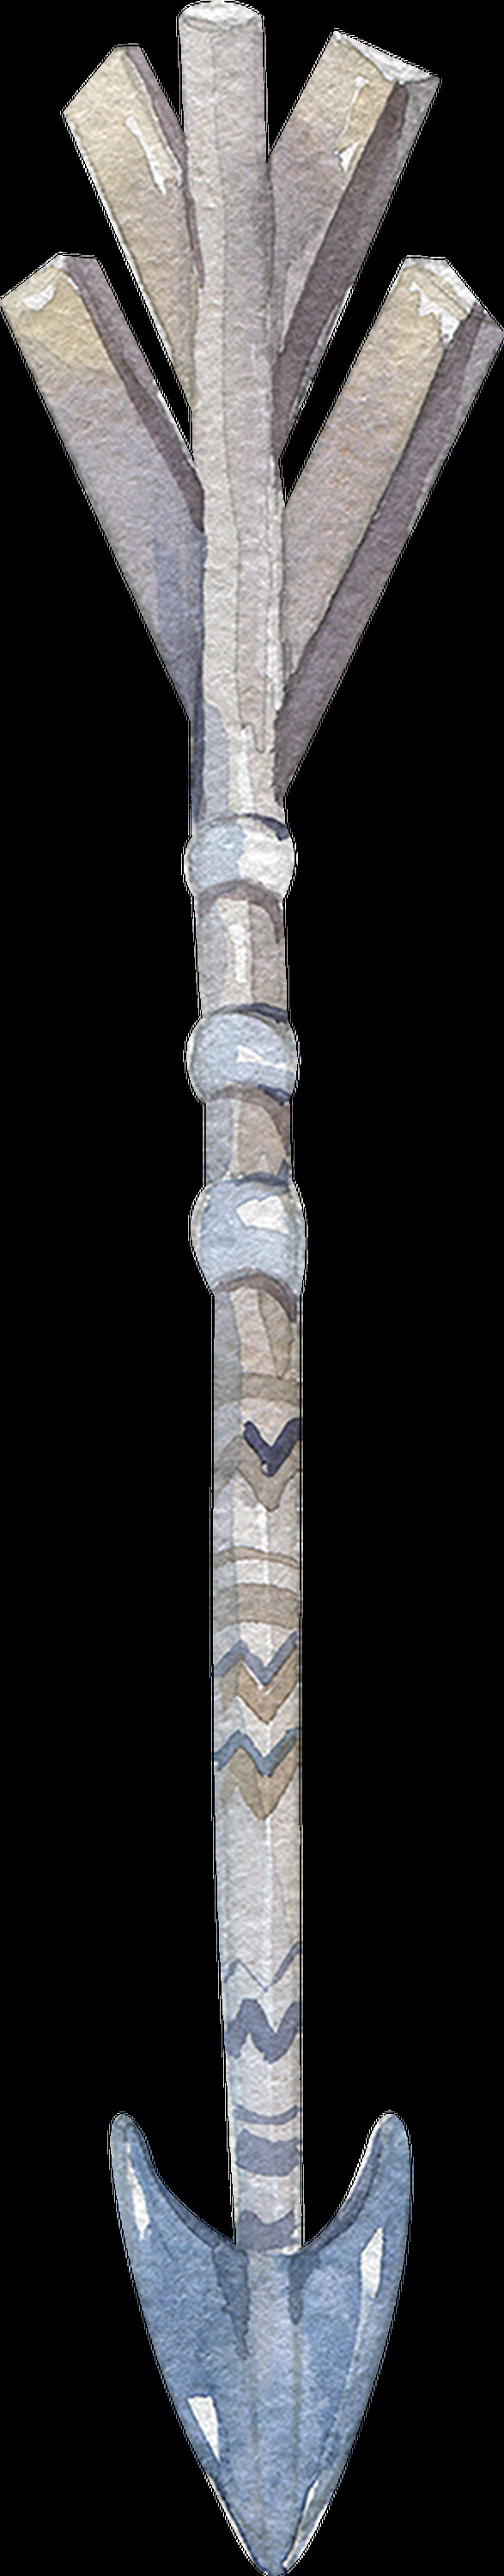 时尚 弓箭 卡通 透明 抠图专用 装饰 设计素材